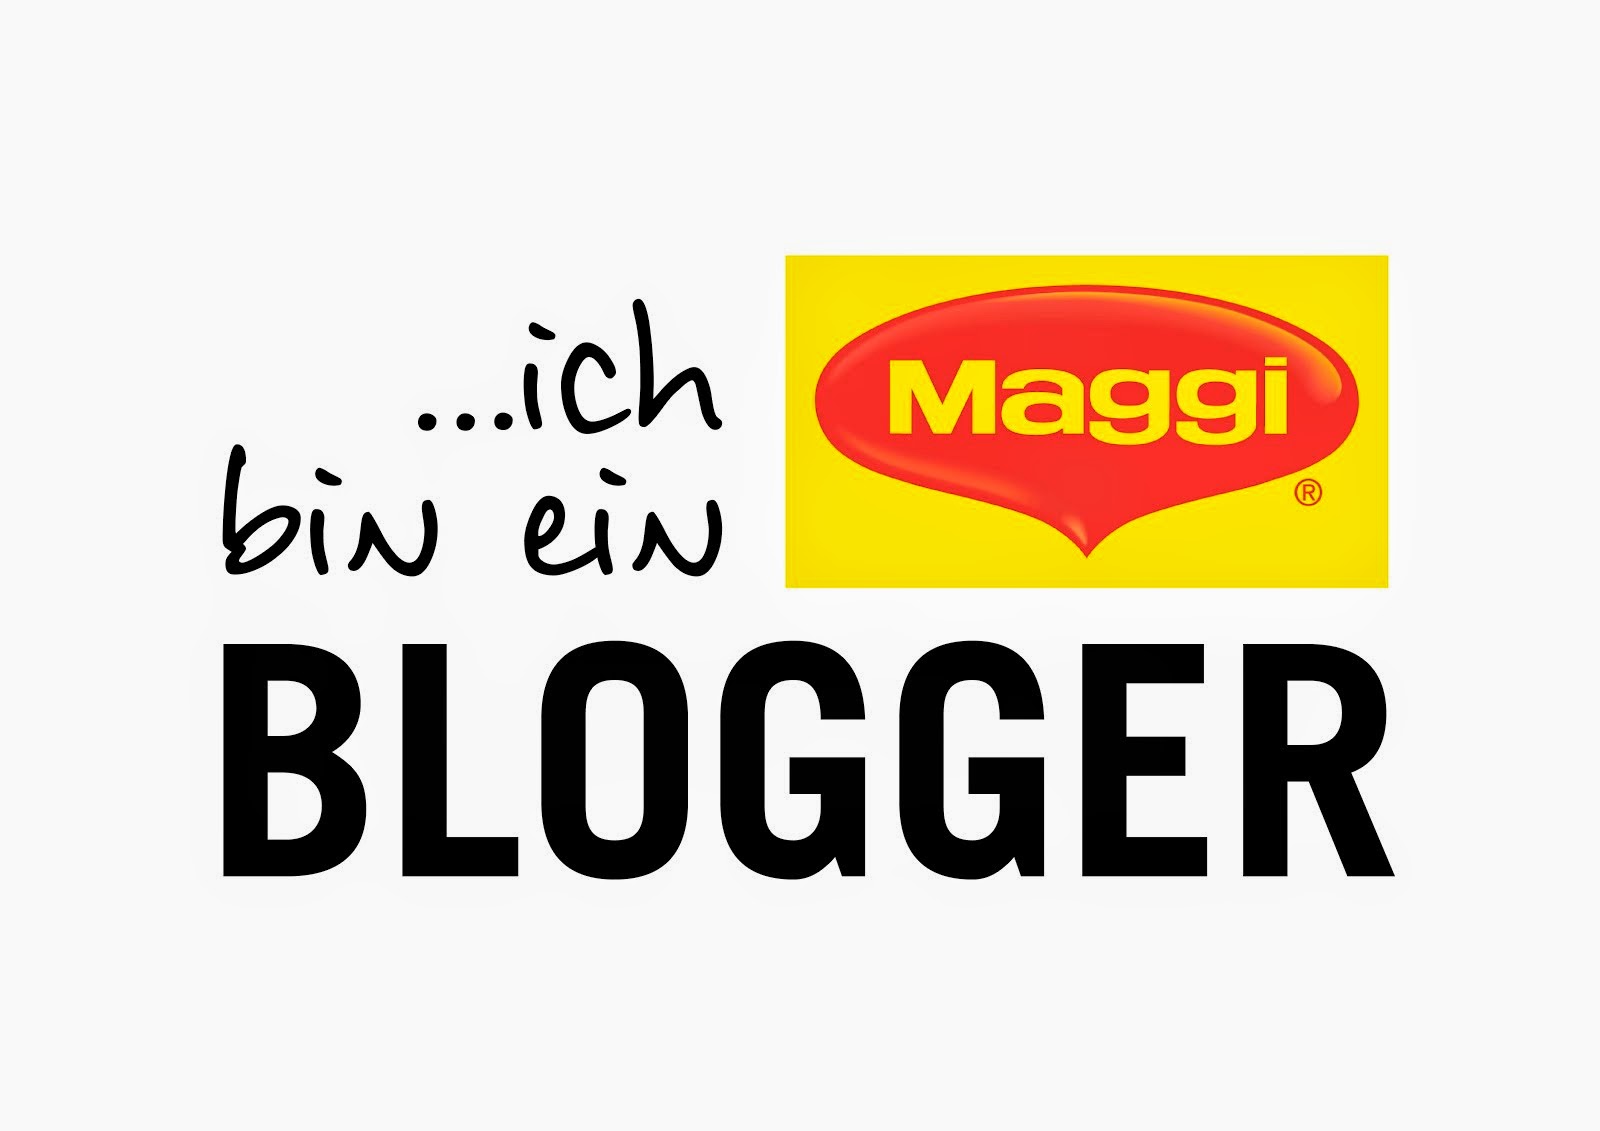 Ich bin ein Maggi Blogger